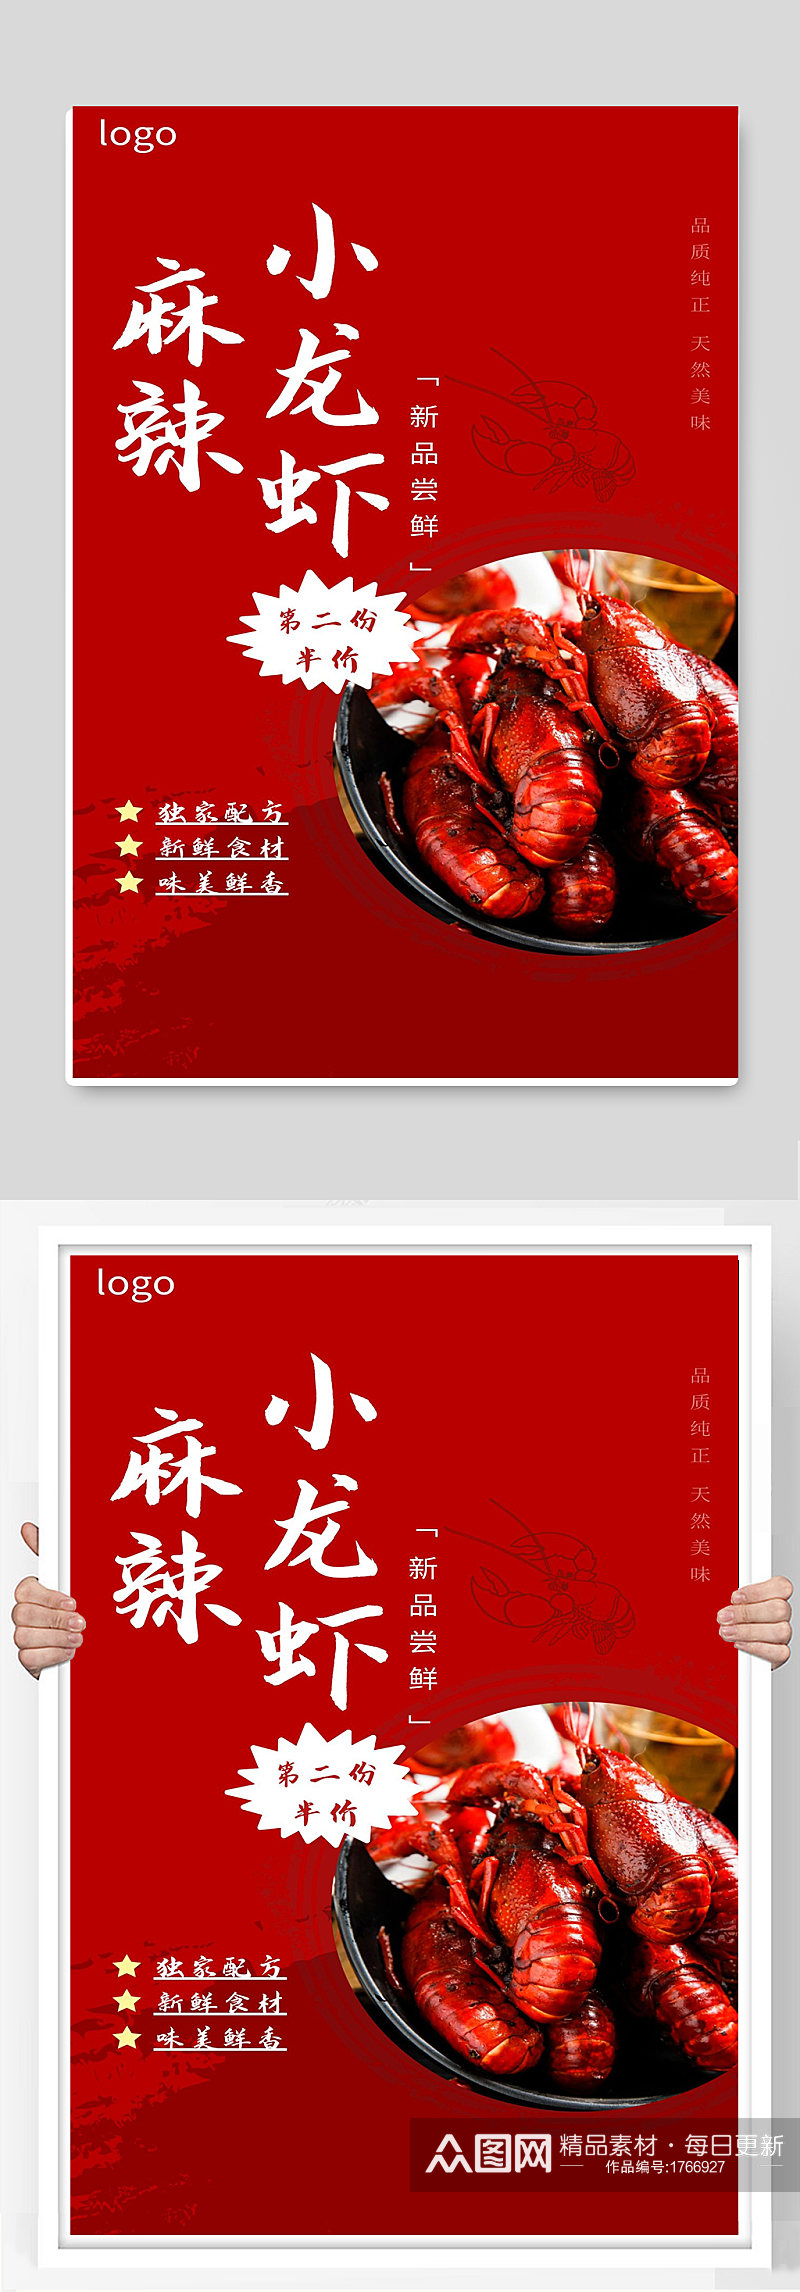 麻辣小龙虾宣传海报设计素材